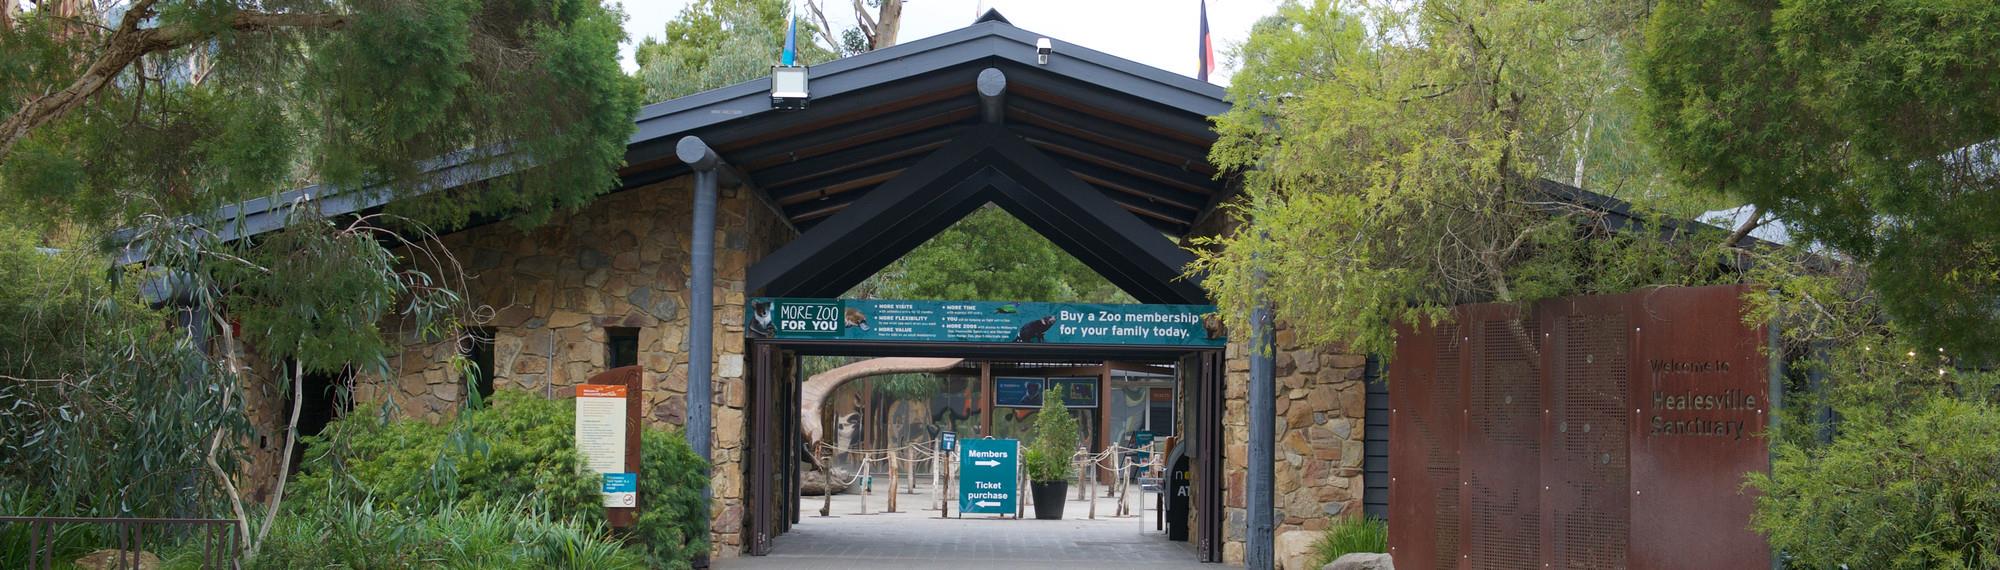 Healesville Sanctuary's Main Entrance.